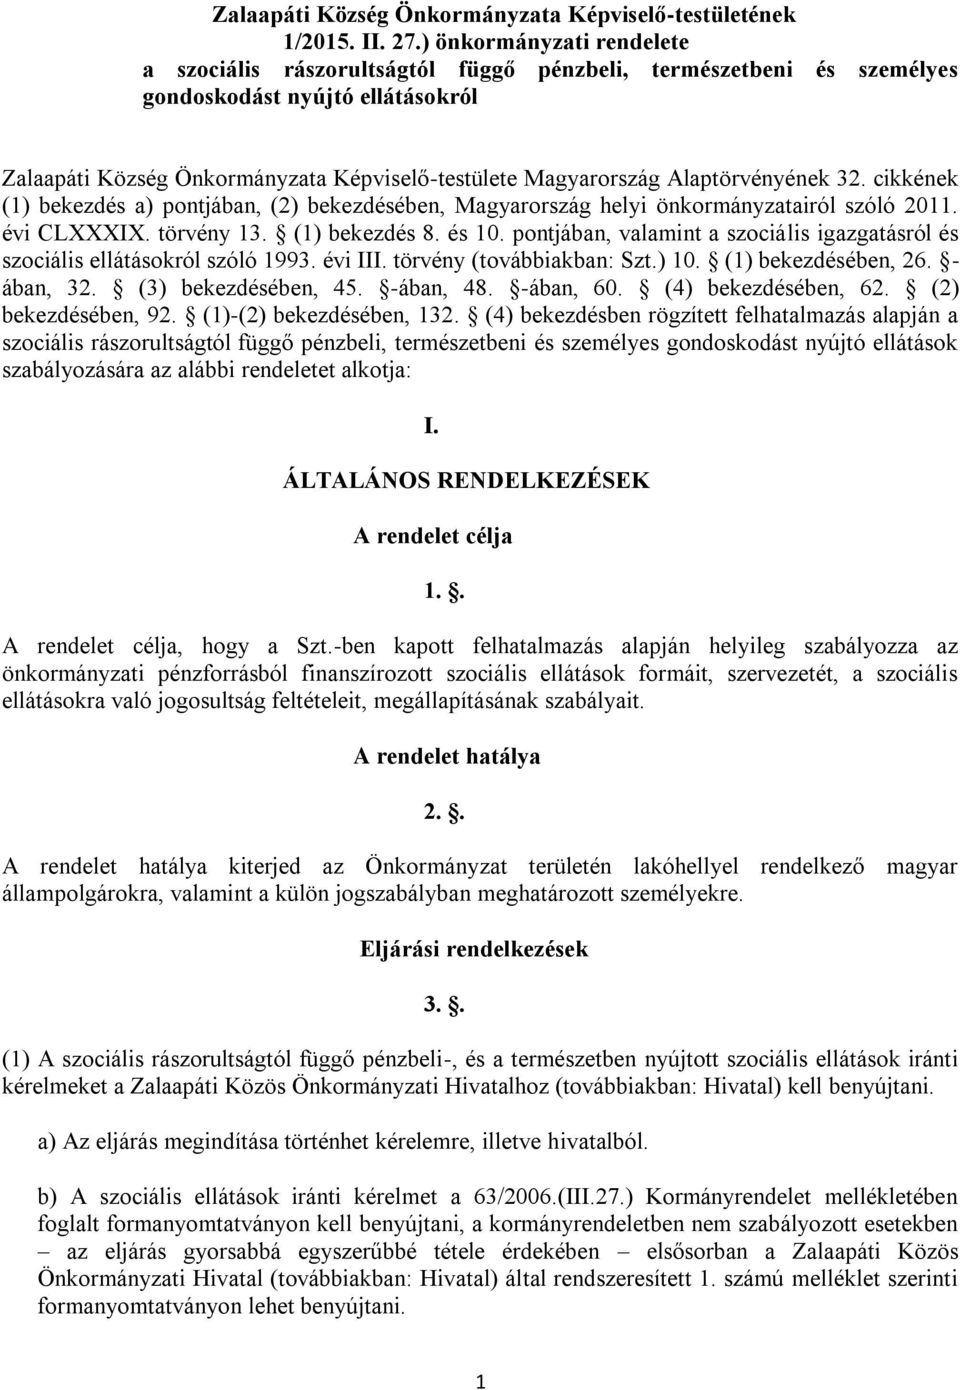 Alaptörvényének 32. cikkének (1) bekezdés a) pontjában, (2) bekezdésében, Magyarország helyi önkormányzatairól szóló 2011. évi CLXXXIX. törvény 13. (1) bekezdés 8. és 10.